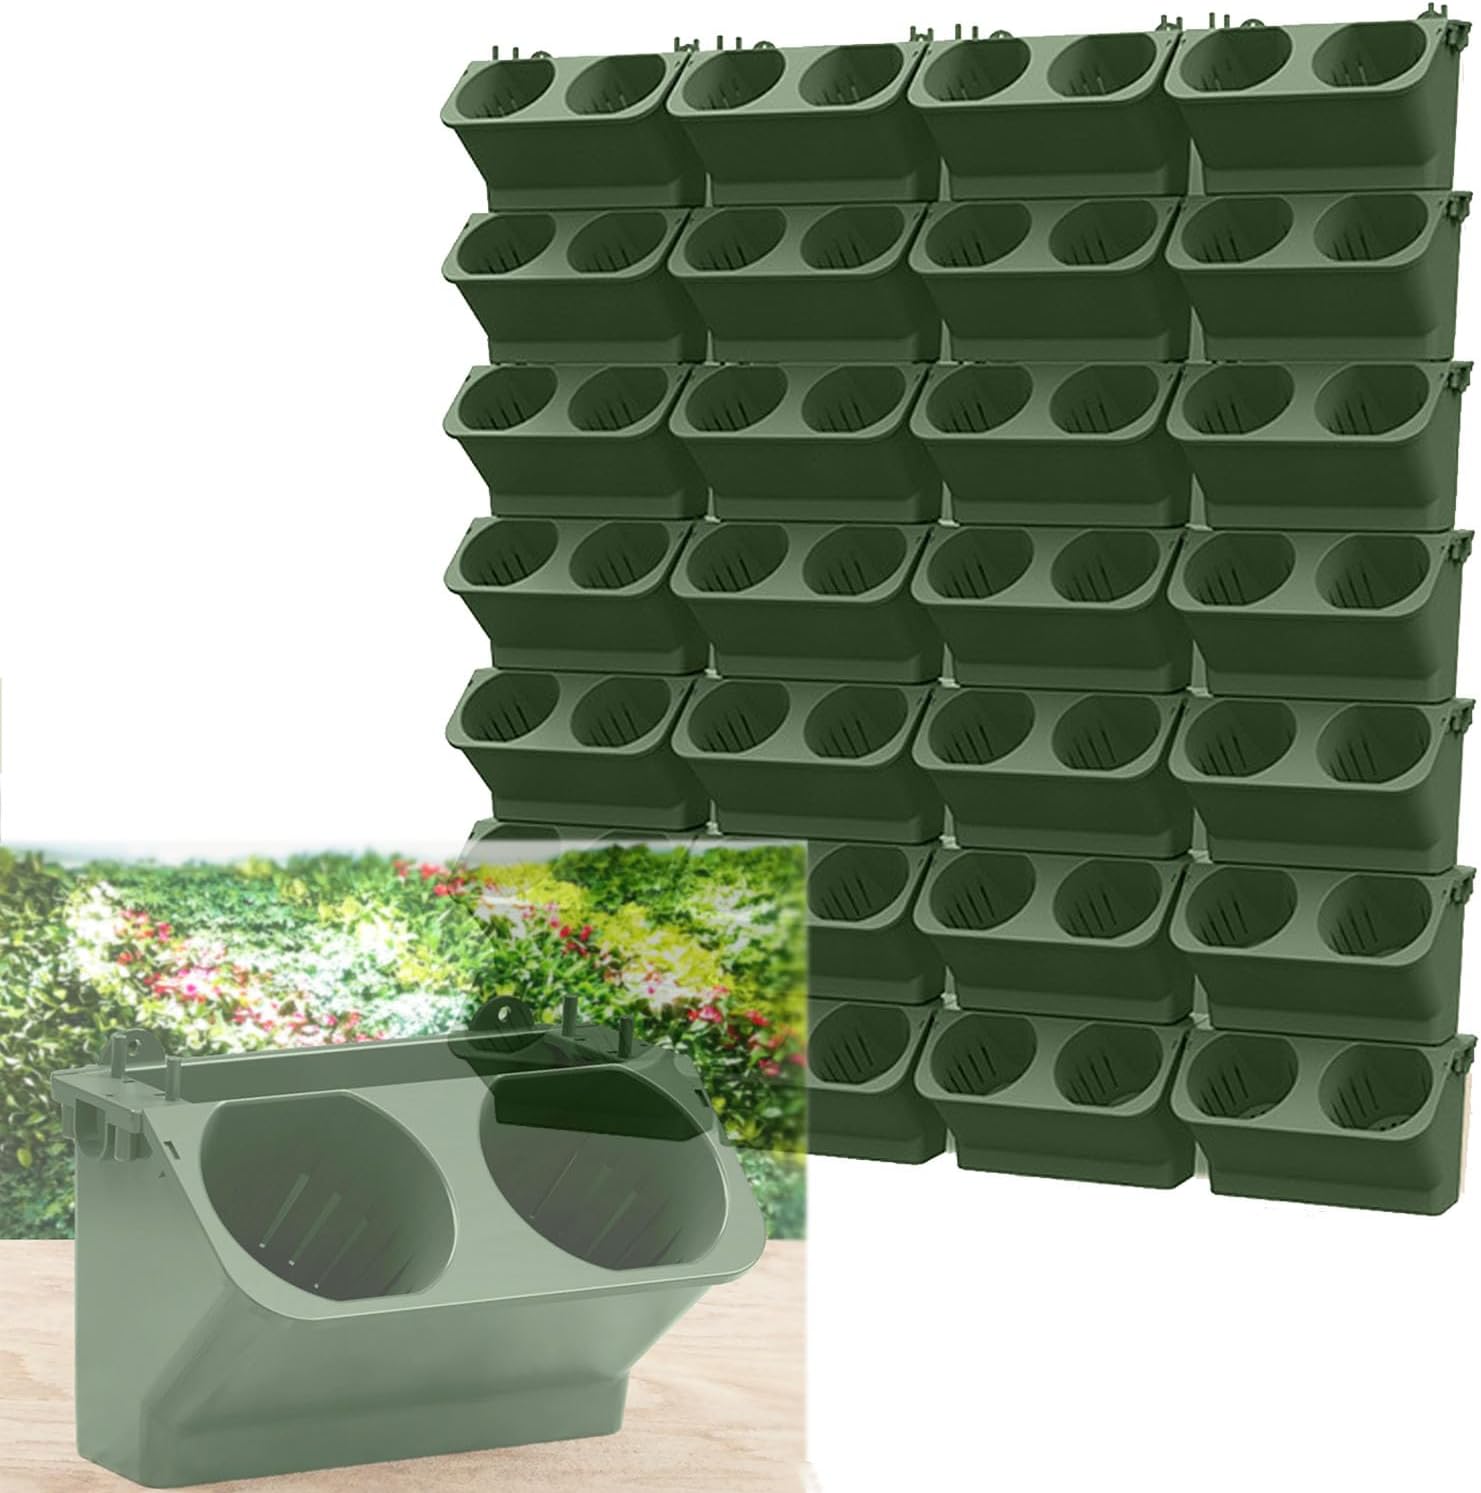 フラワーポット ウォールグリーン植木鉢 壁掛け垂直プランター 壁面緑化 観葉植物 野菜栽培 積み重ね可能 組立式 ベランダ植栽ポット インテリア栽培  通気性 設